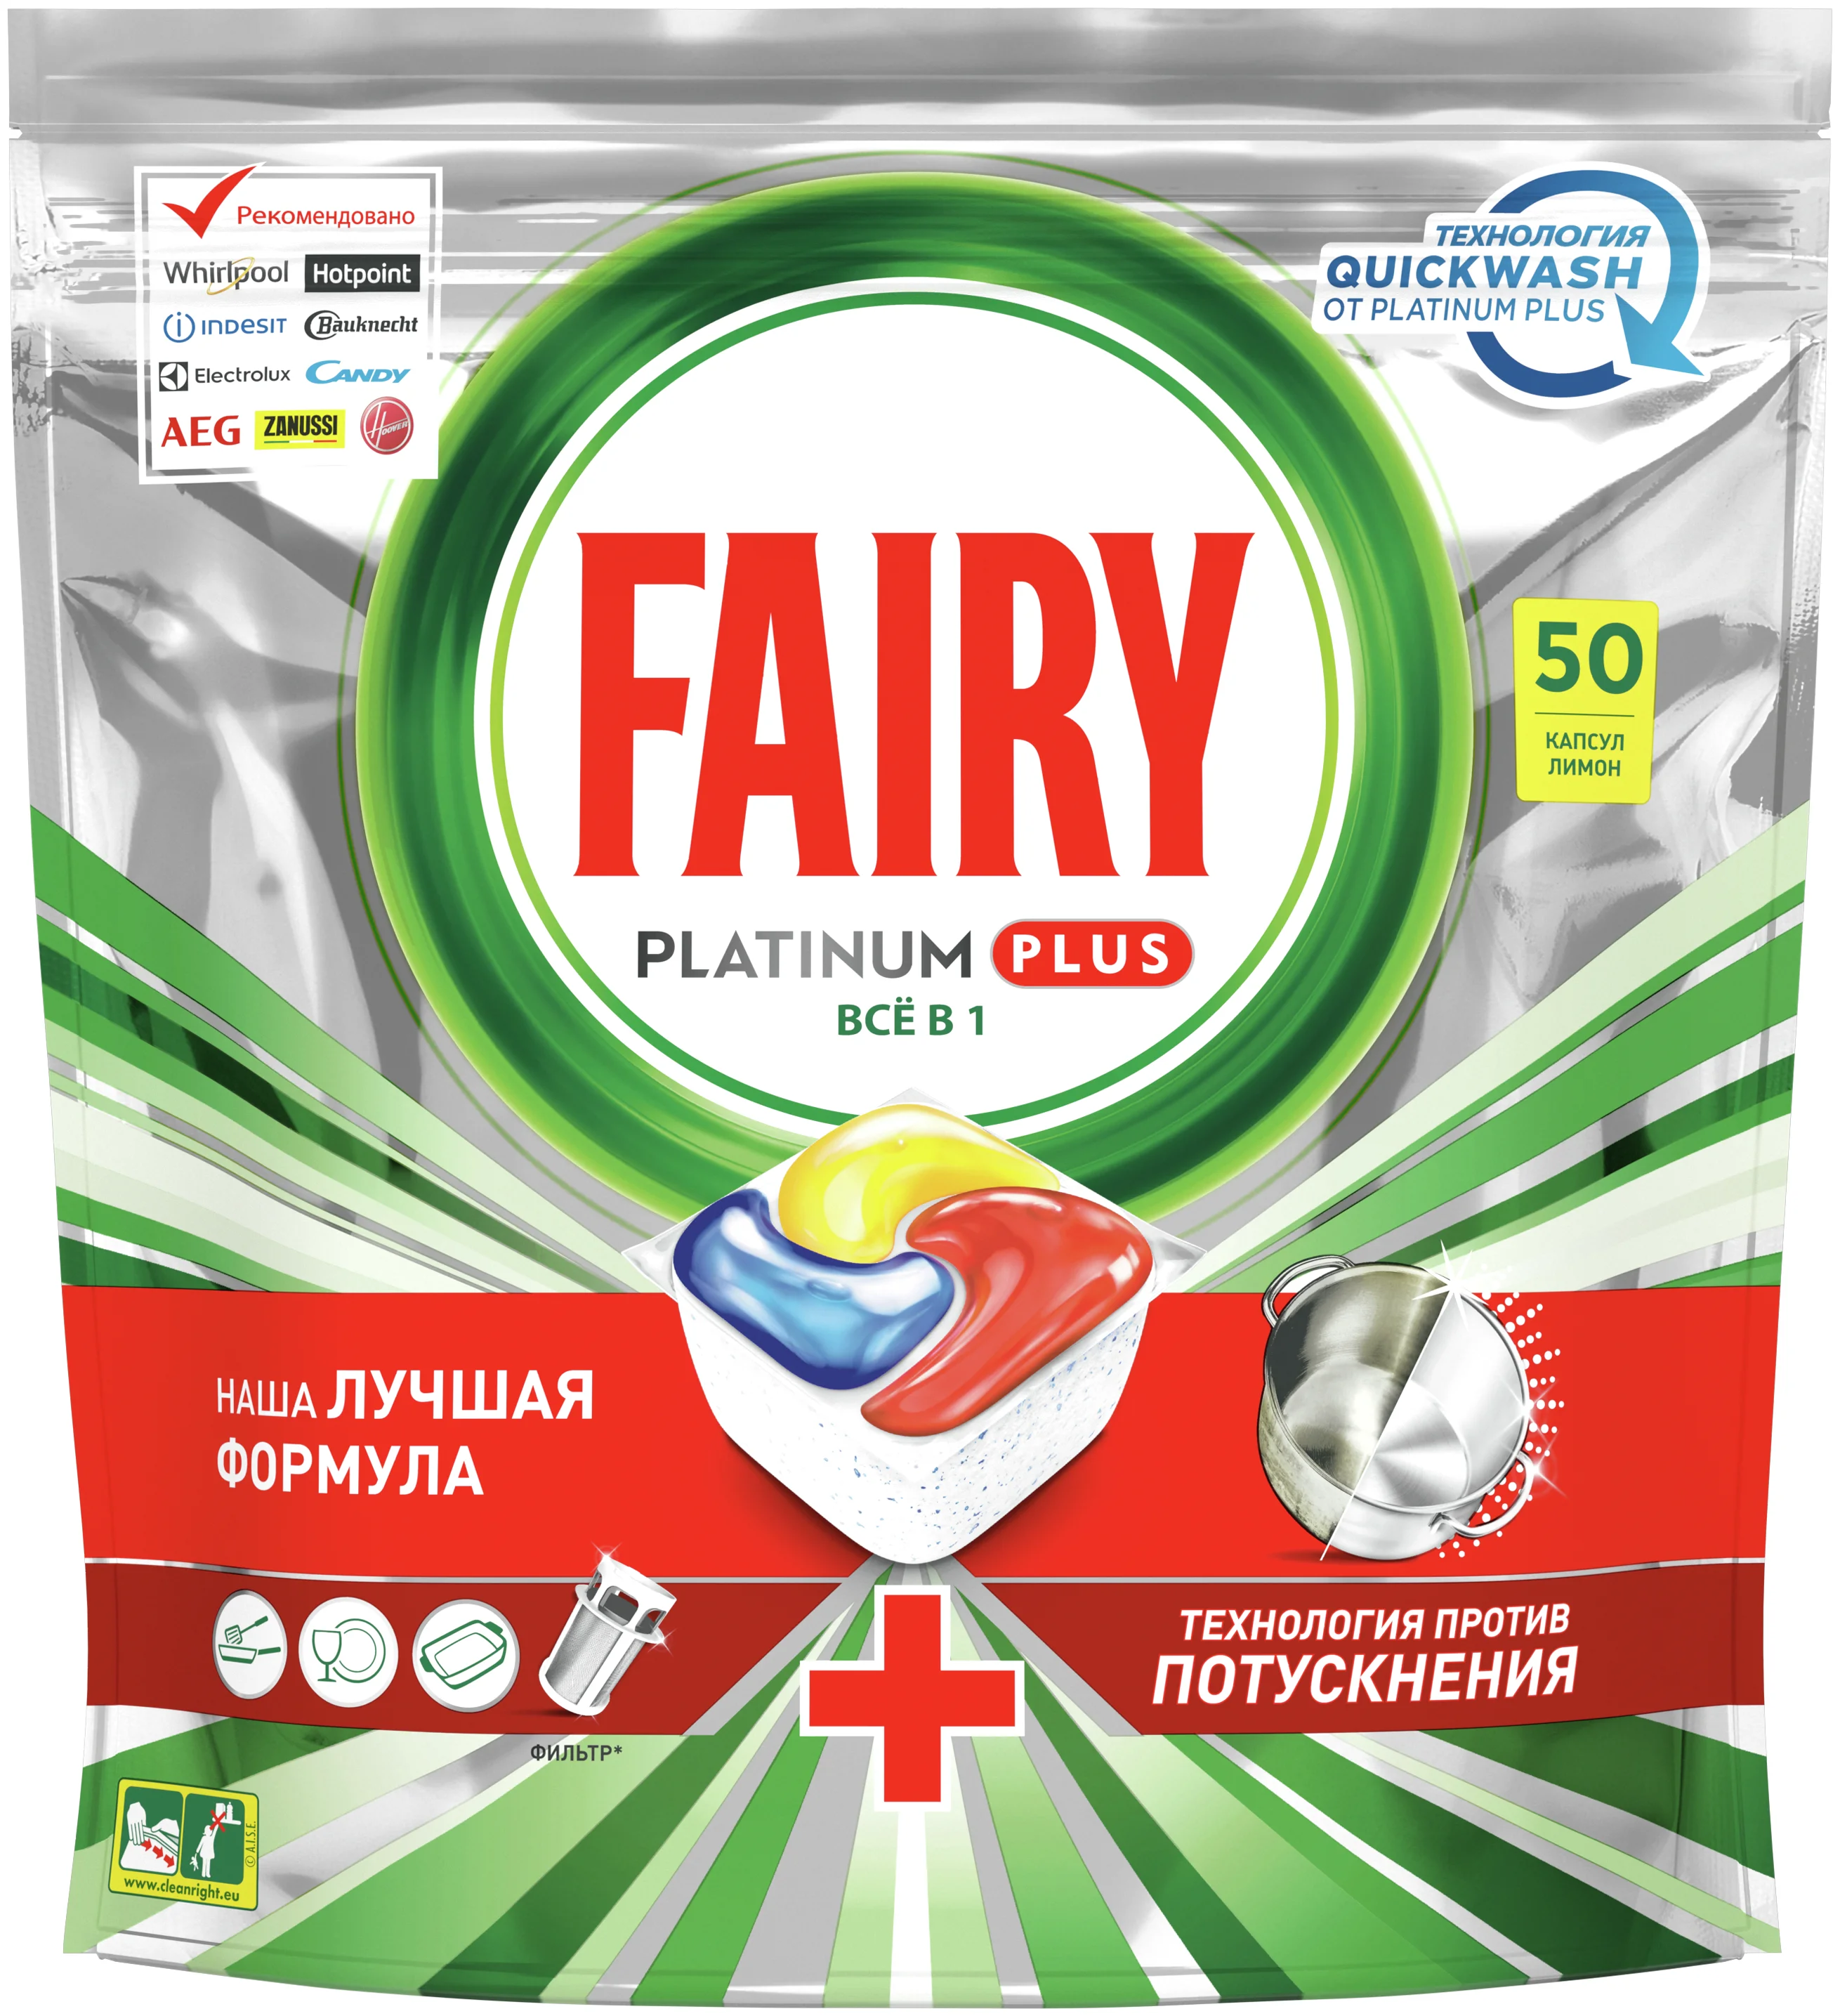 Fairy Platinum+ All in1 - назначение: для устранения запаха, для мытья посуды, для придания блеска, для защиты от накипи